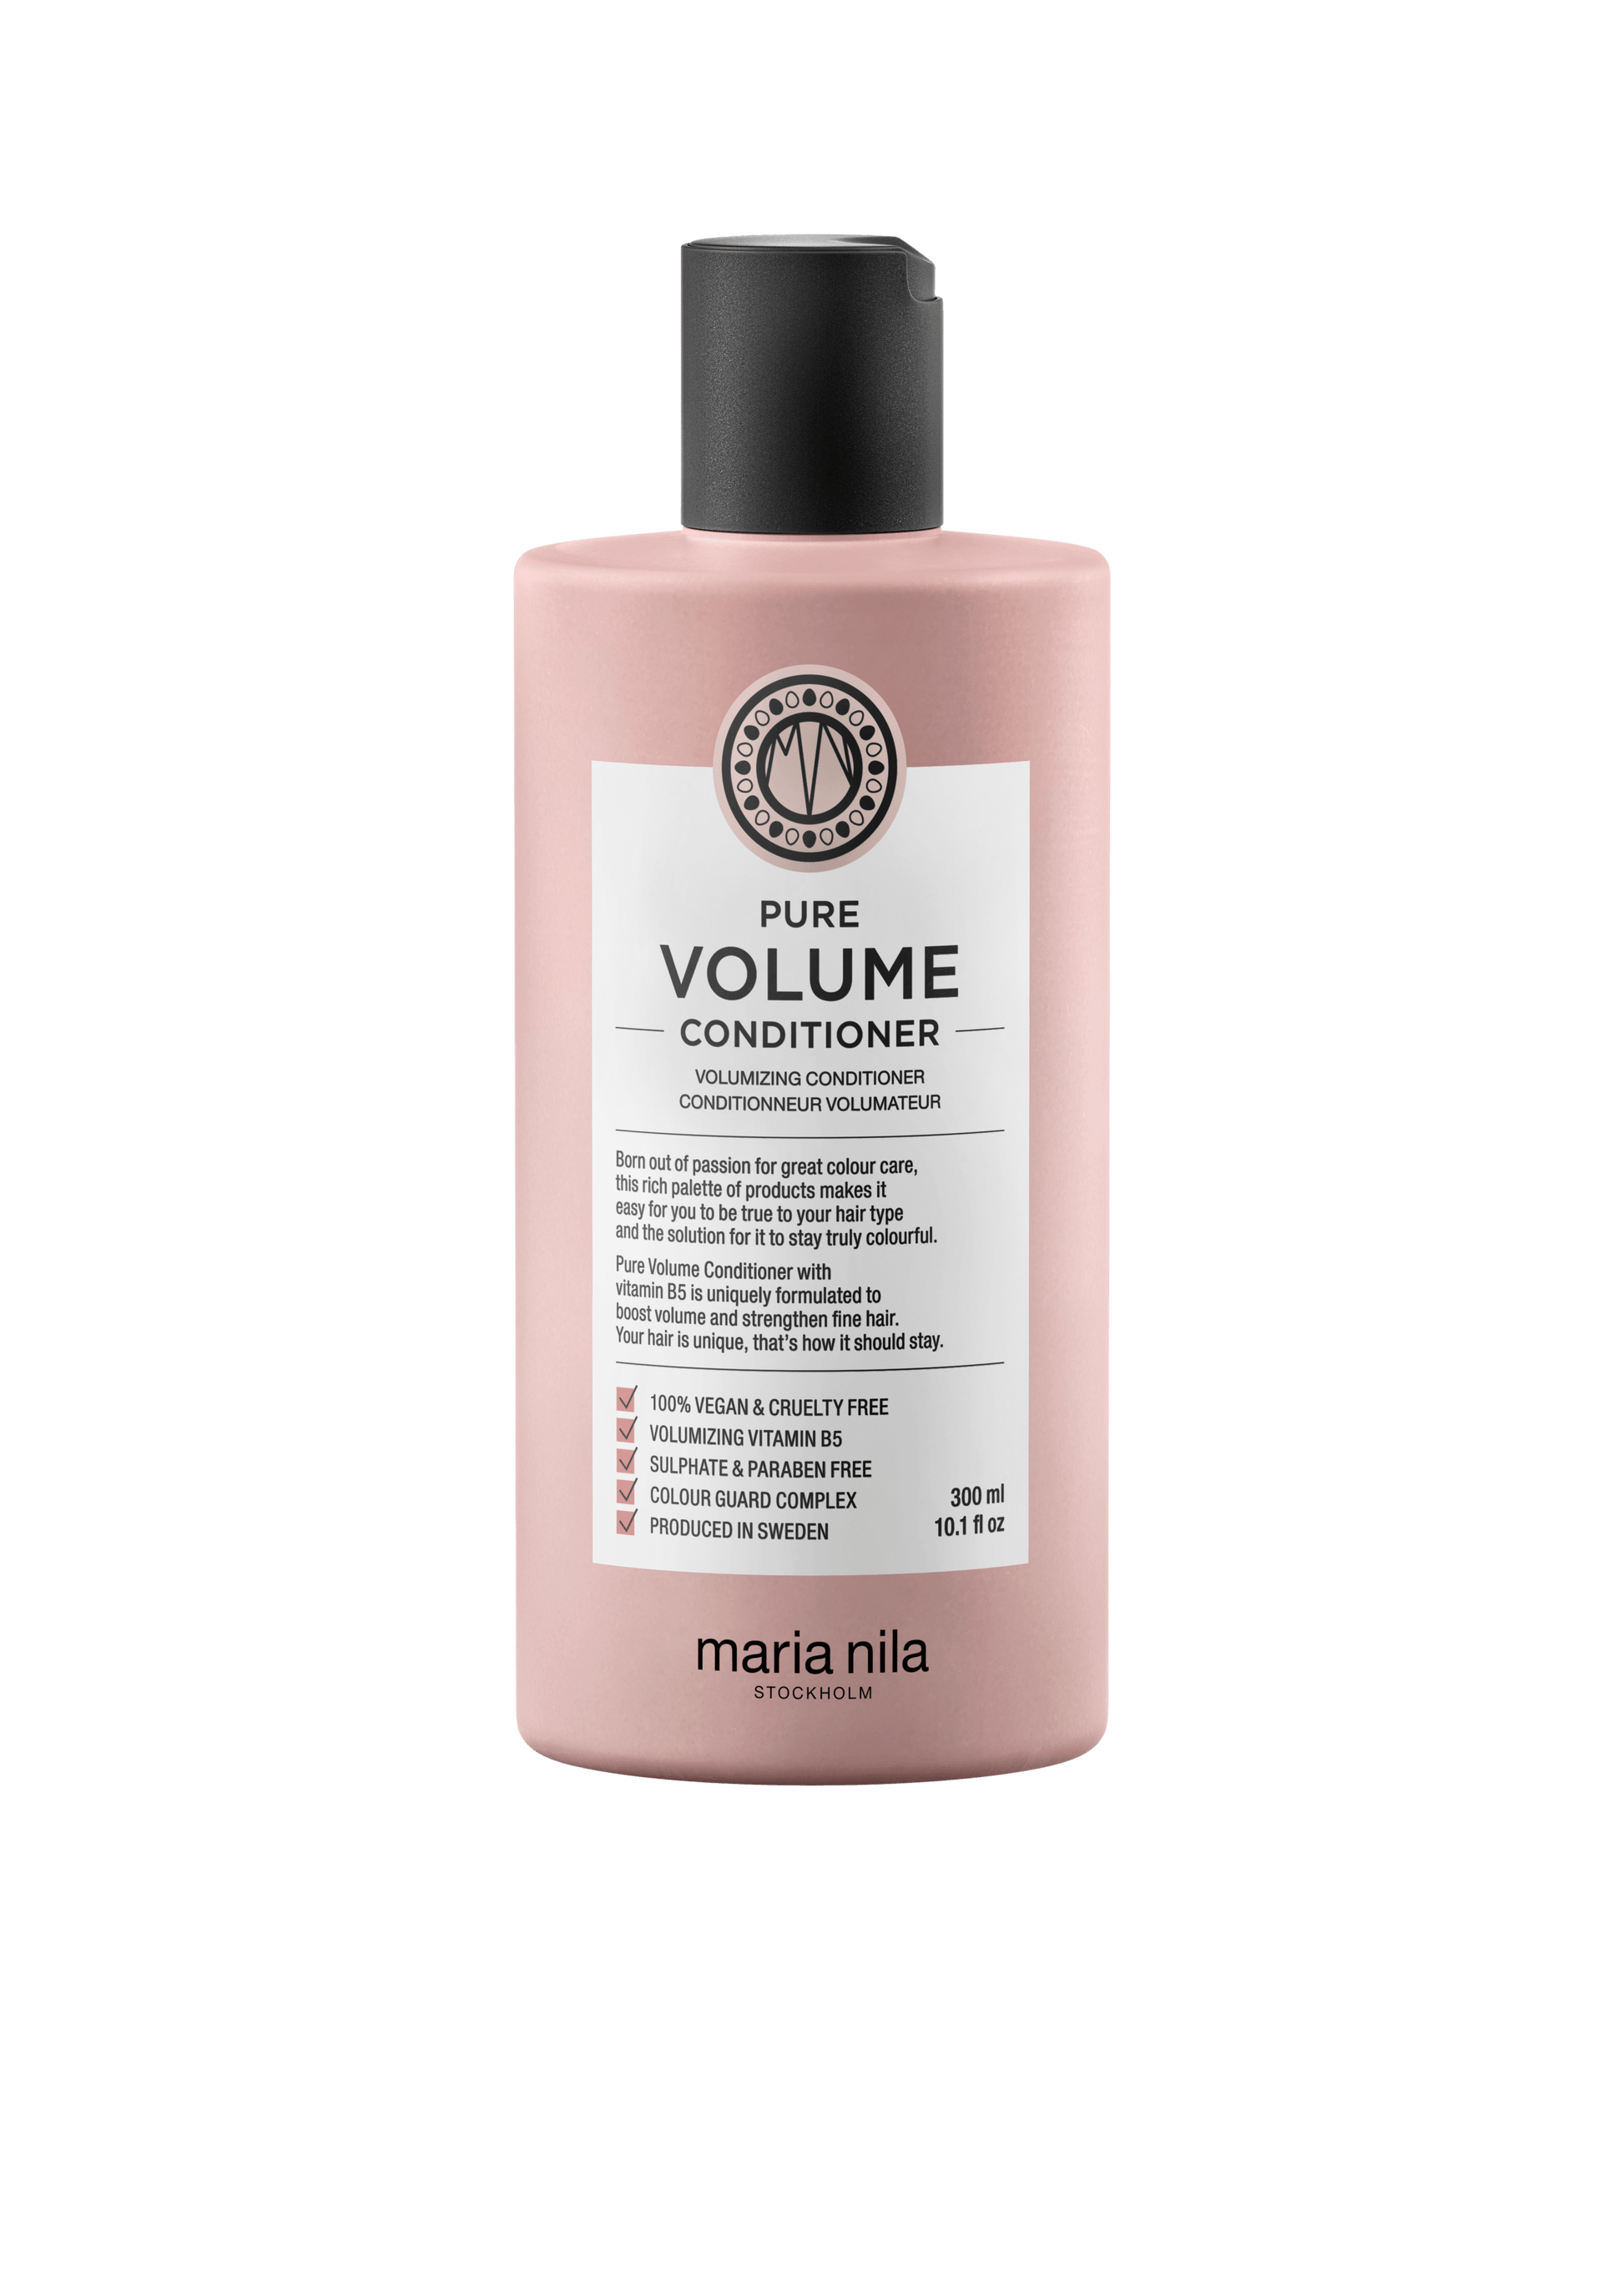 Pure Volume Conditioner - The Coloroom 